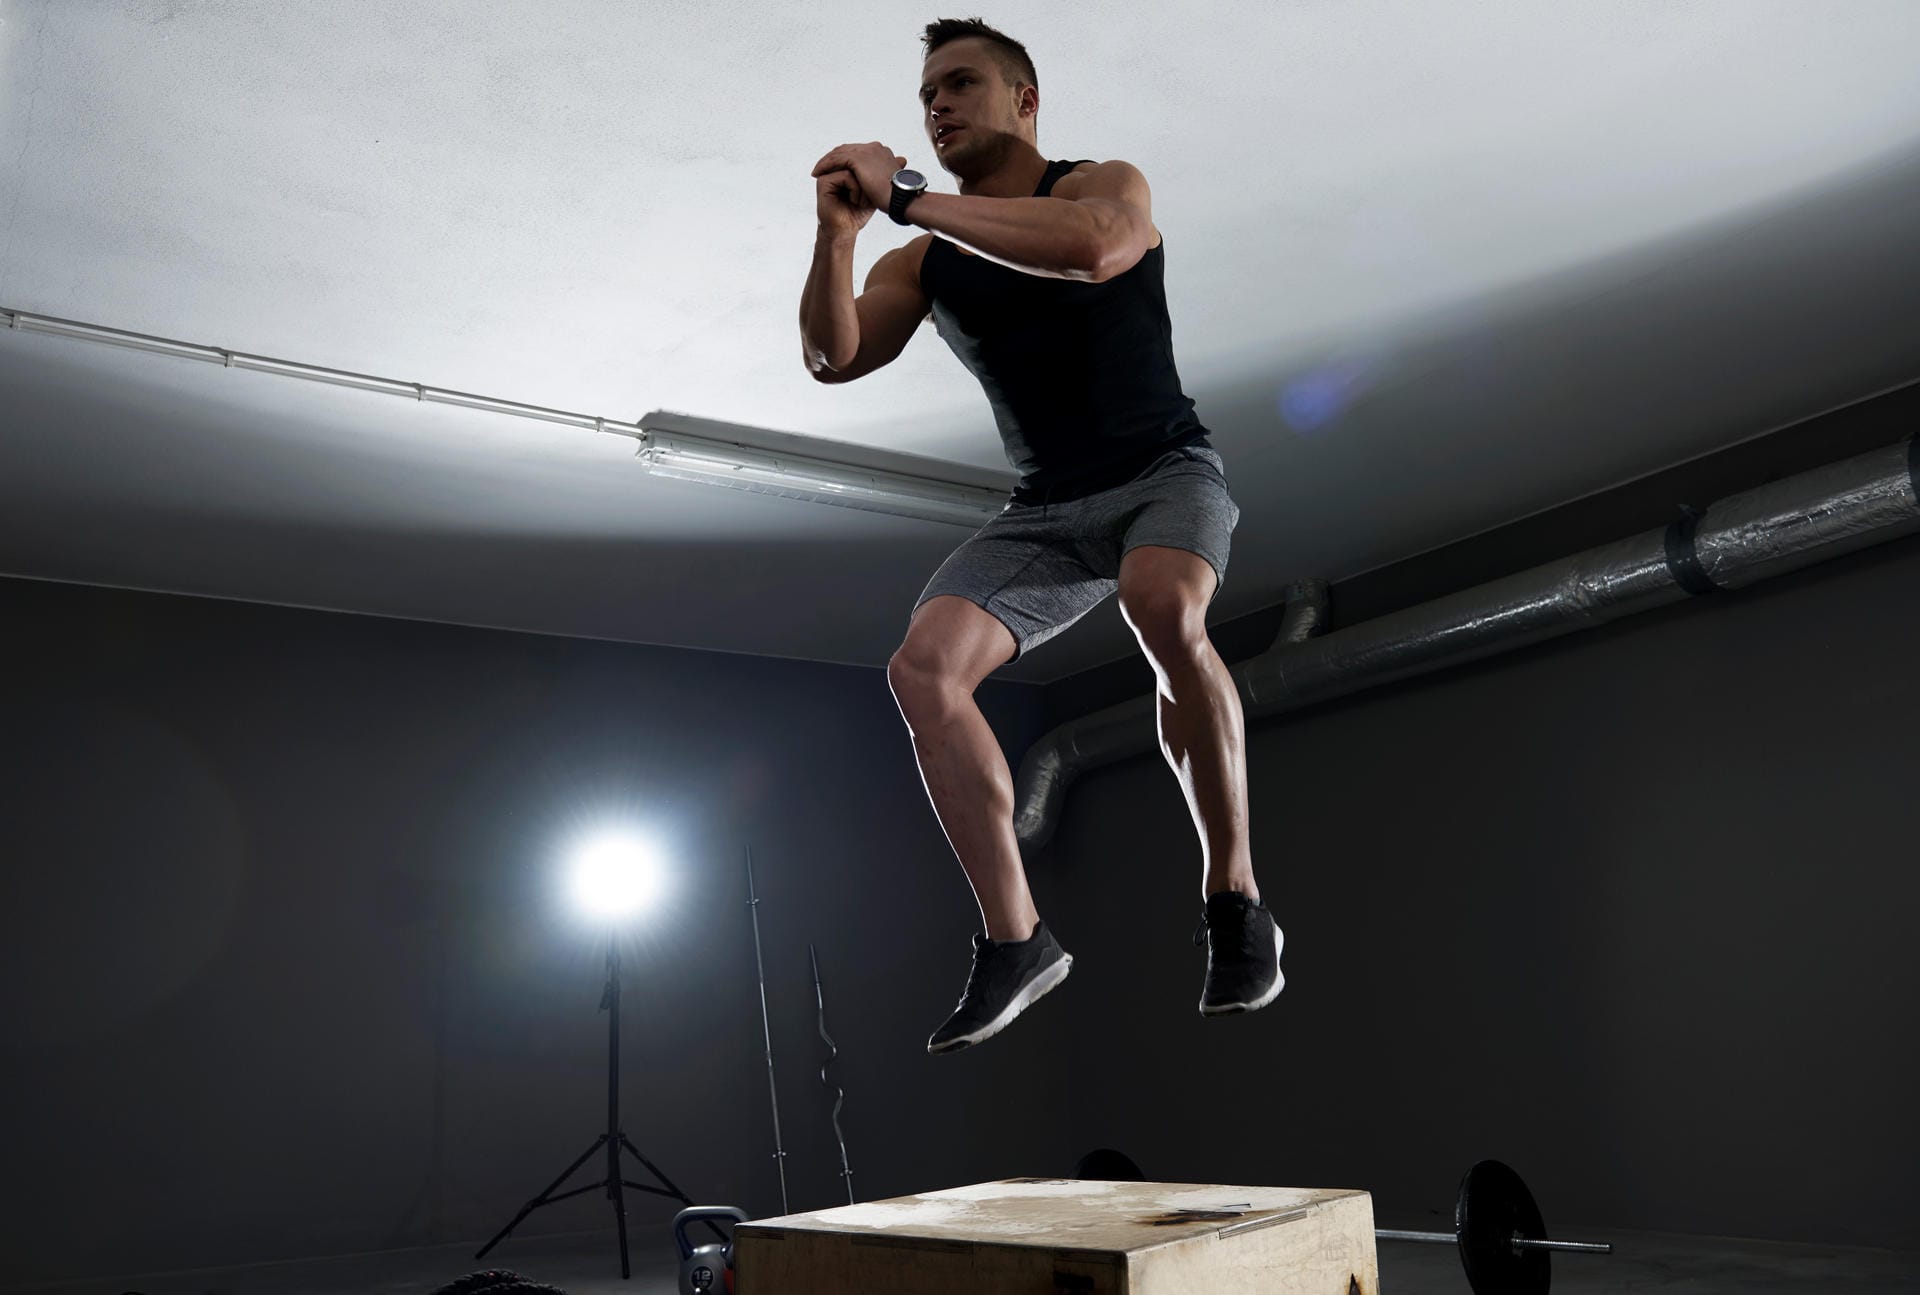 Wenn man von der komplexen und statischen Kniebeuge dann noch zum dynamischerem "Jump Squat" übergeht, wird aus einer etwas veralteten Kraftsportübung eine Kraft-Ausdauer-Einheit. Beim "Jump Squat" springen Sie aus der tiefen Kniebeuge heraus kraftvoll nach oben.